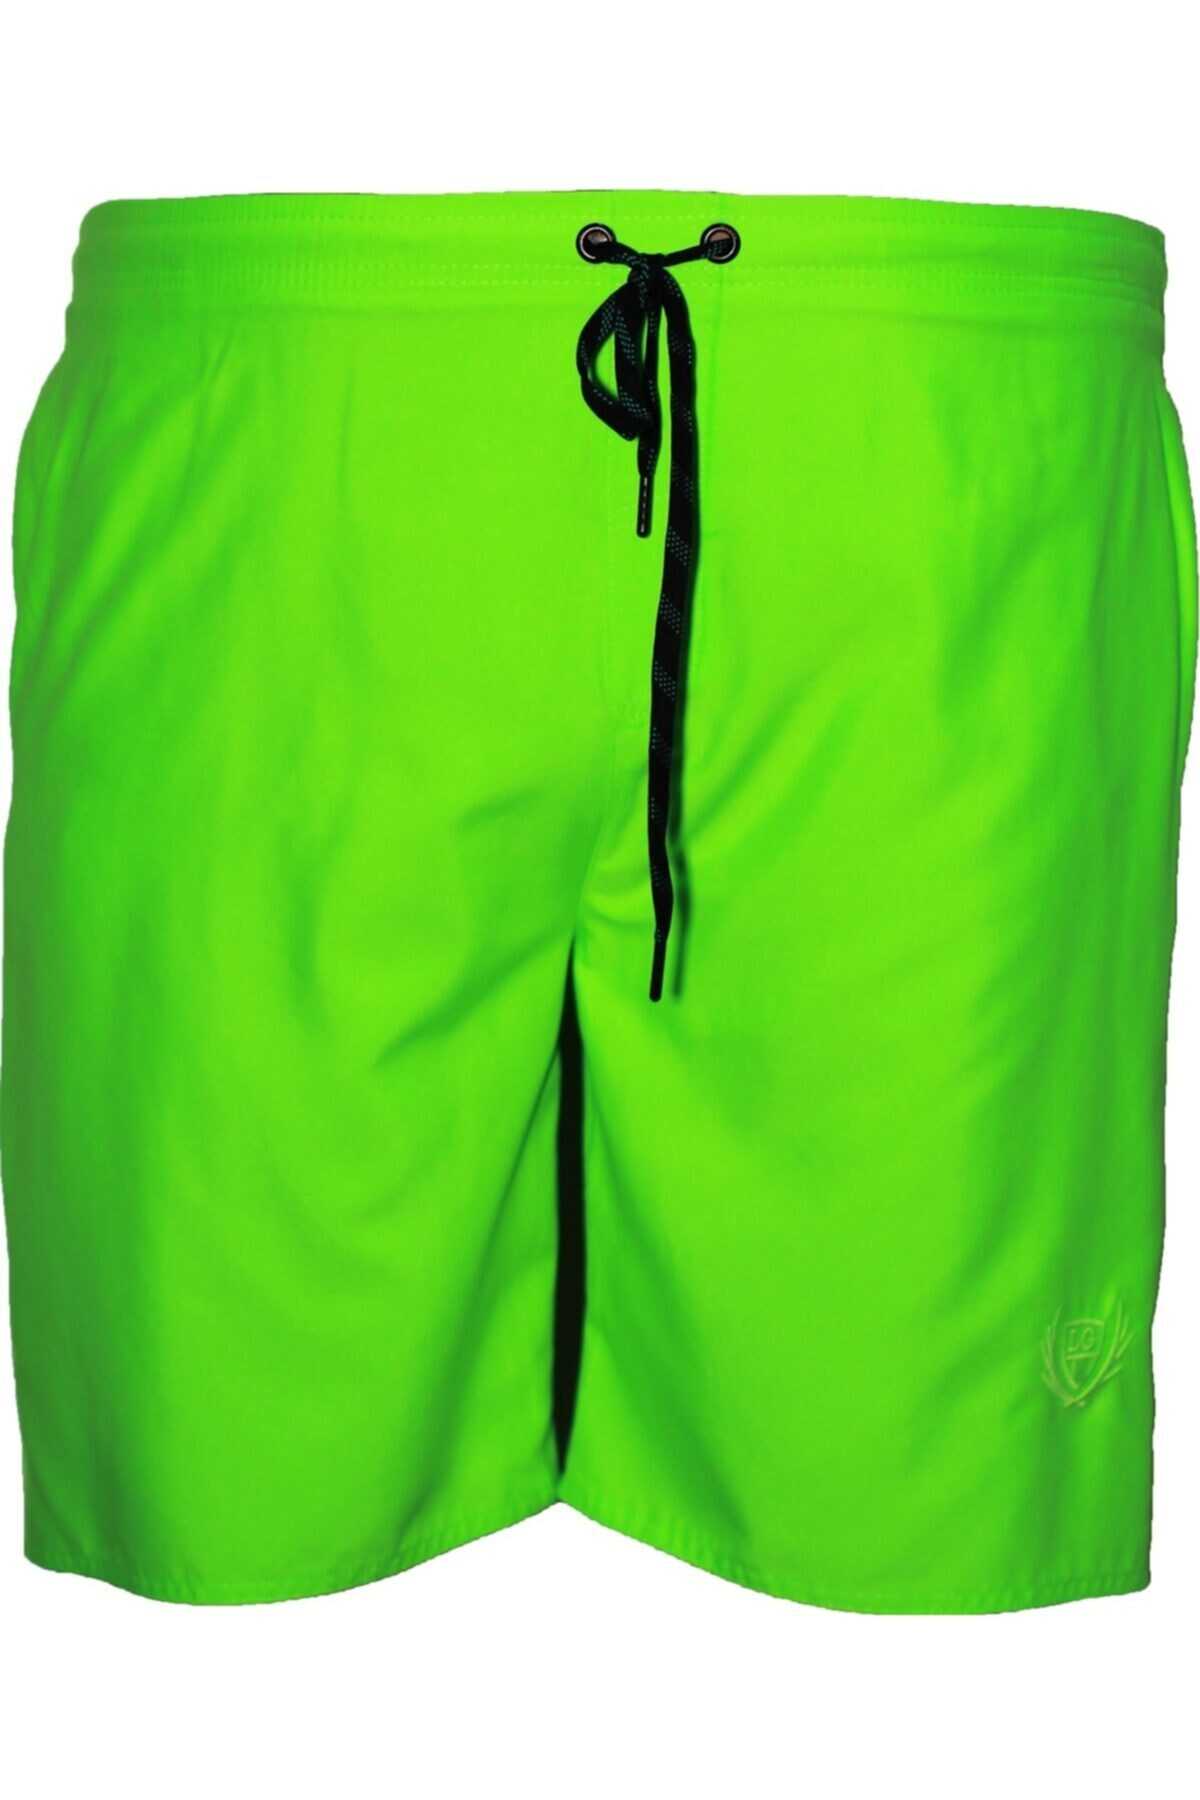 مایو شنا مردانه سایز بزرگ جیب دار سبز برند Lifeguard